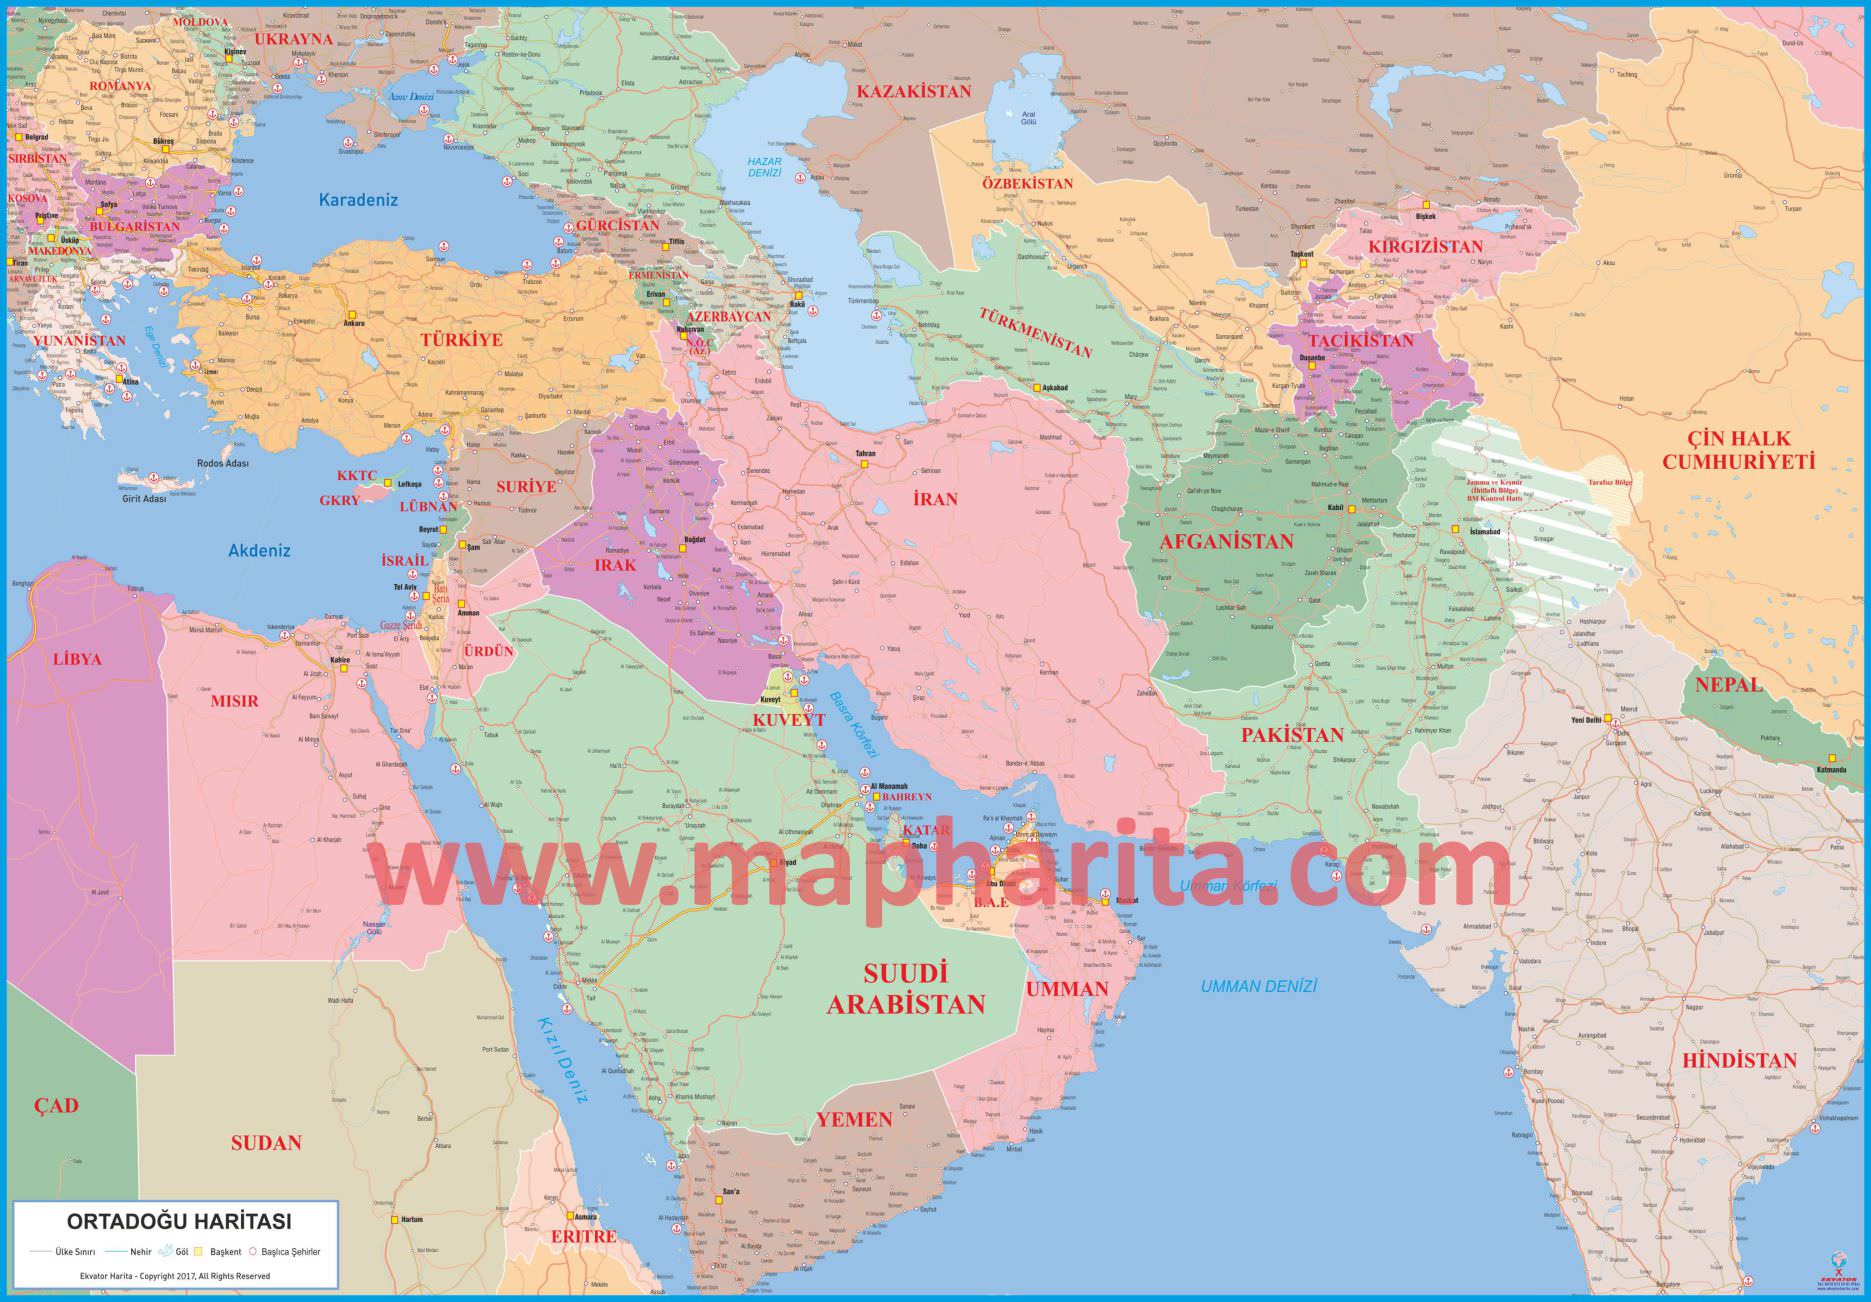 Ortadoğu Haritası Örnek Görüntüsü